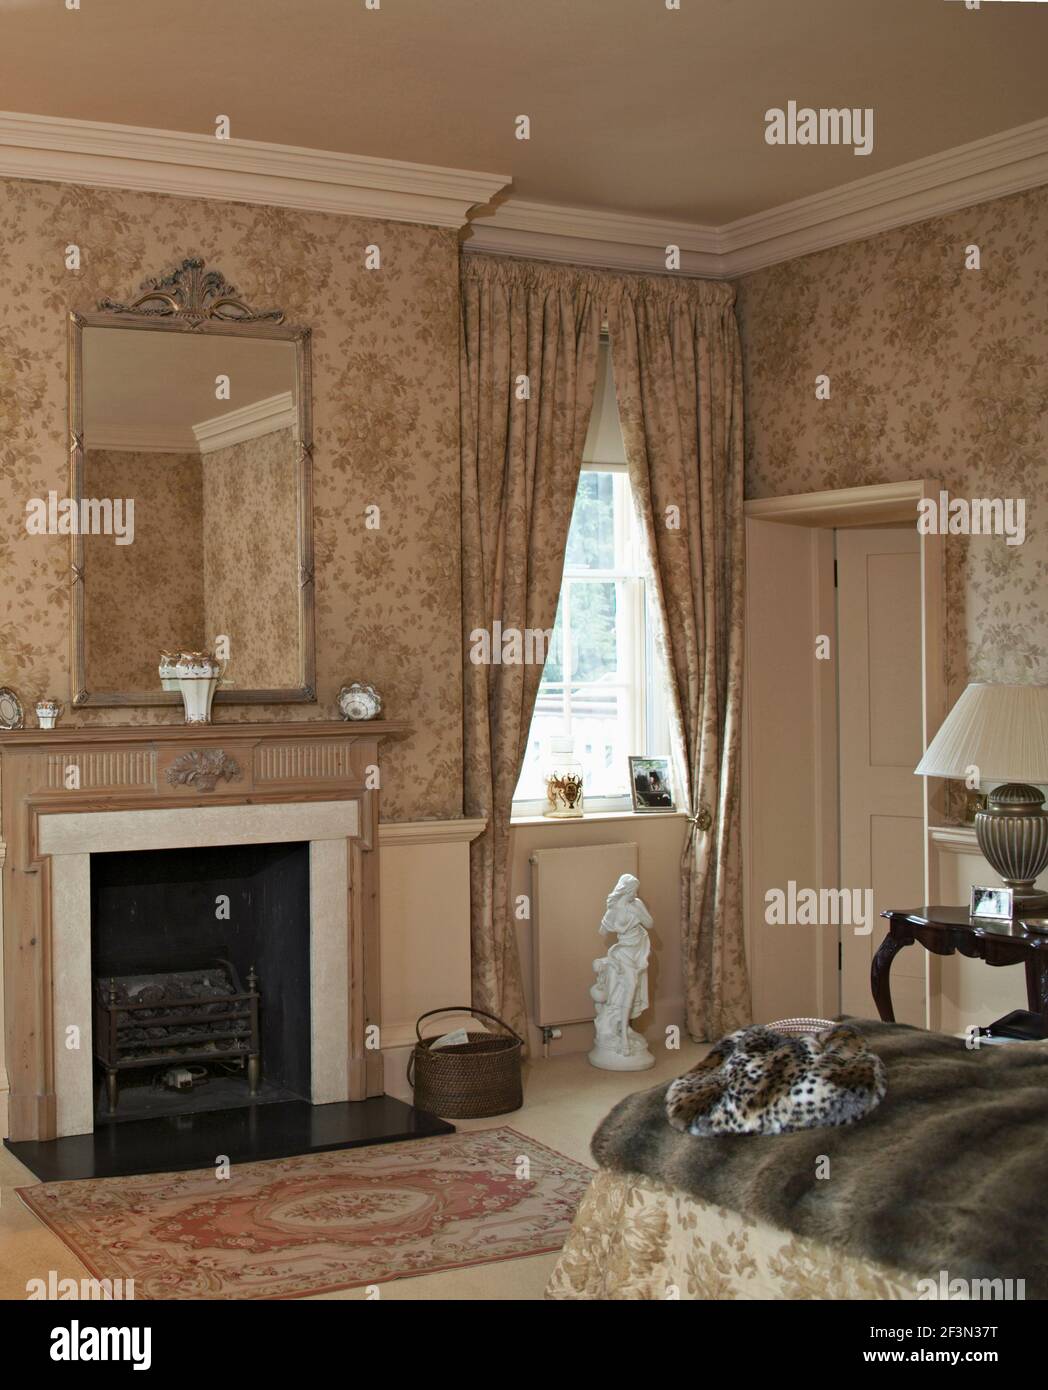 Papier peint à motifs et rideaux assortis dans la chambre avec cheminée Banque D'Images